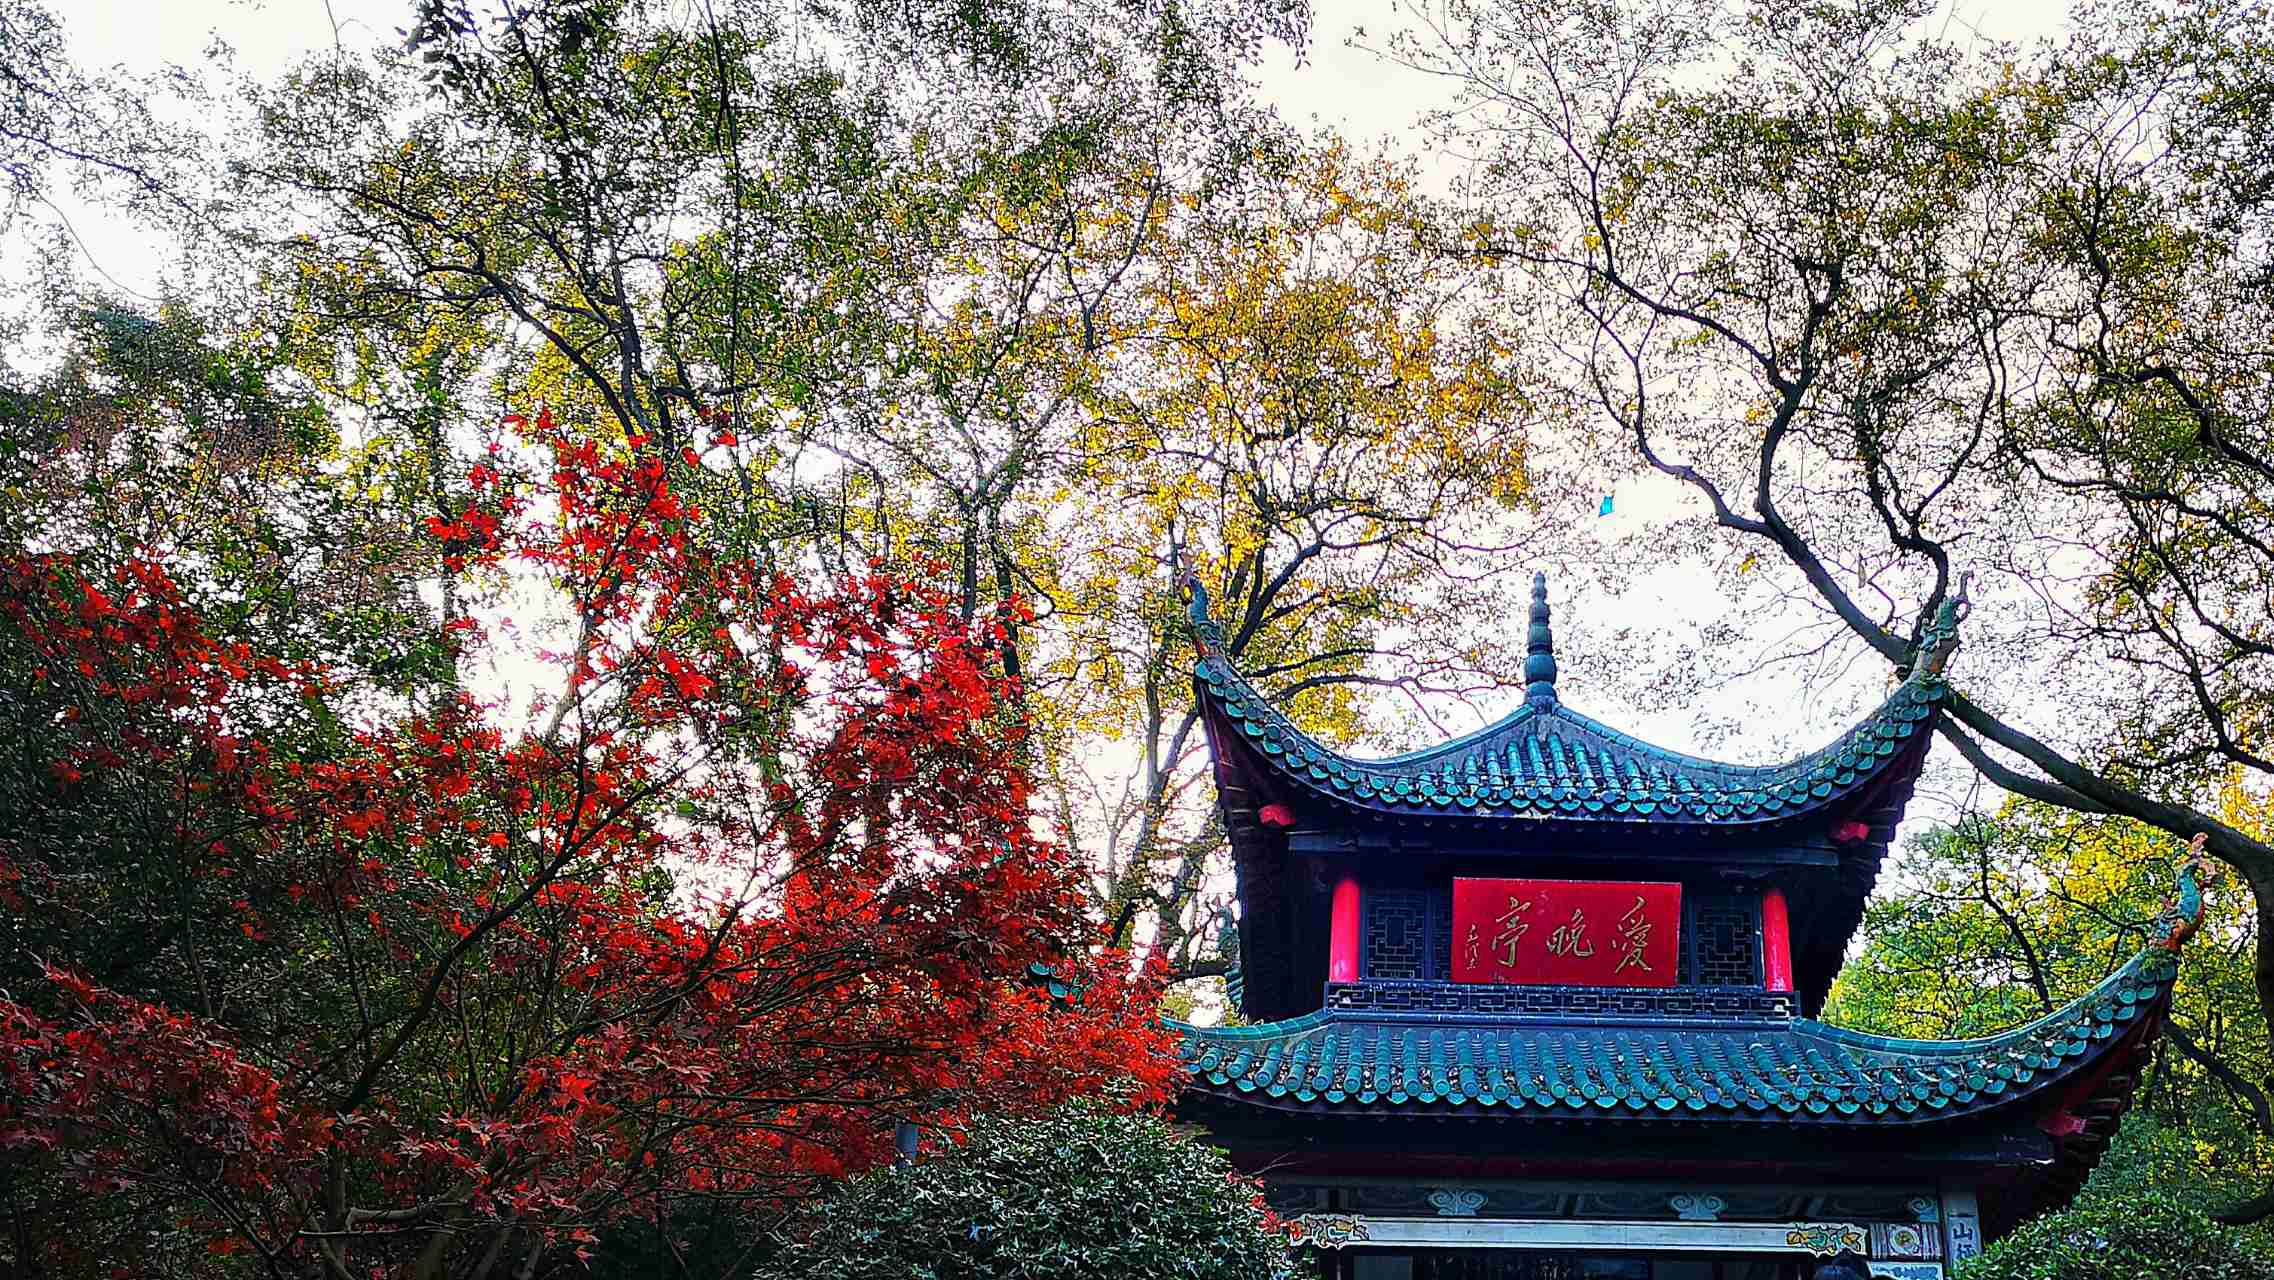 桂林12月份适合旅游吗?应该去哪些景点。 - 知乎